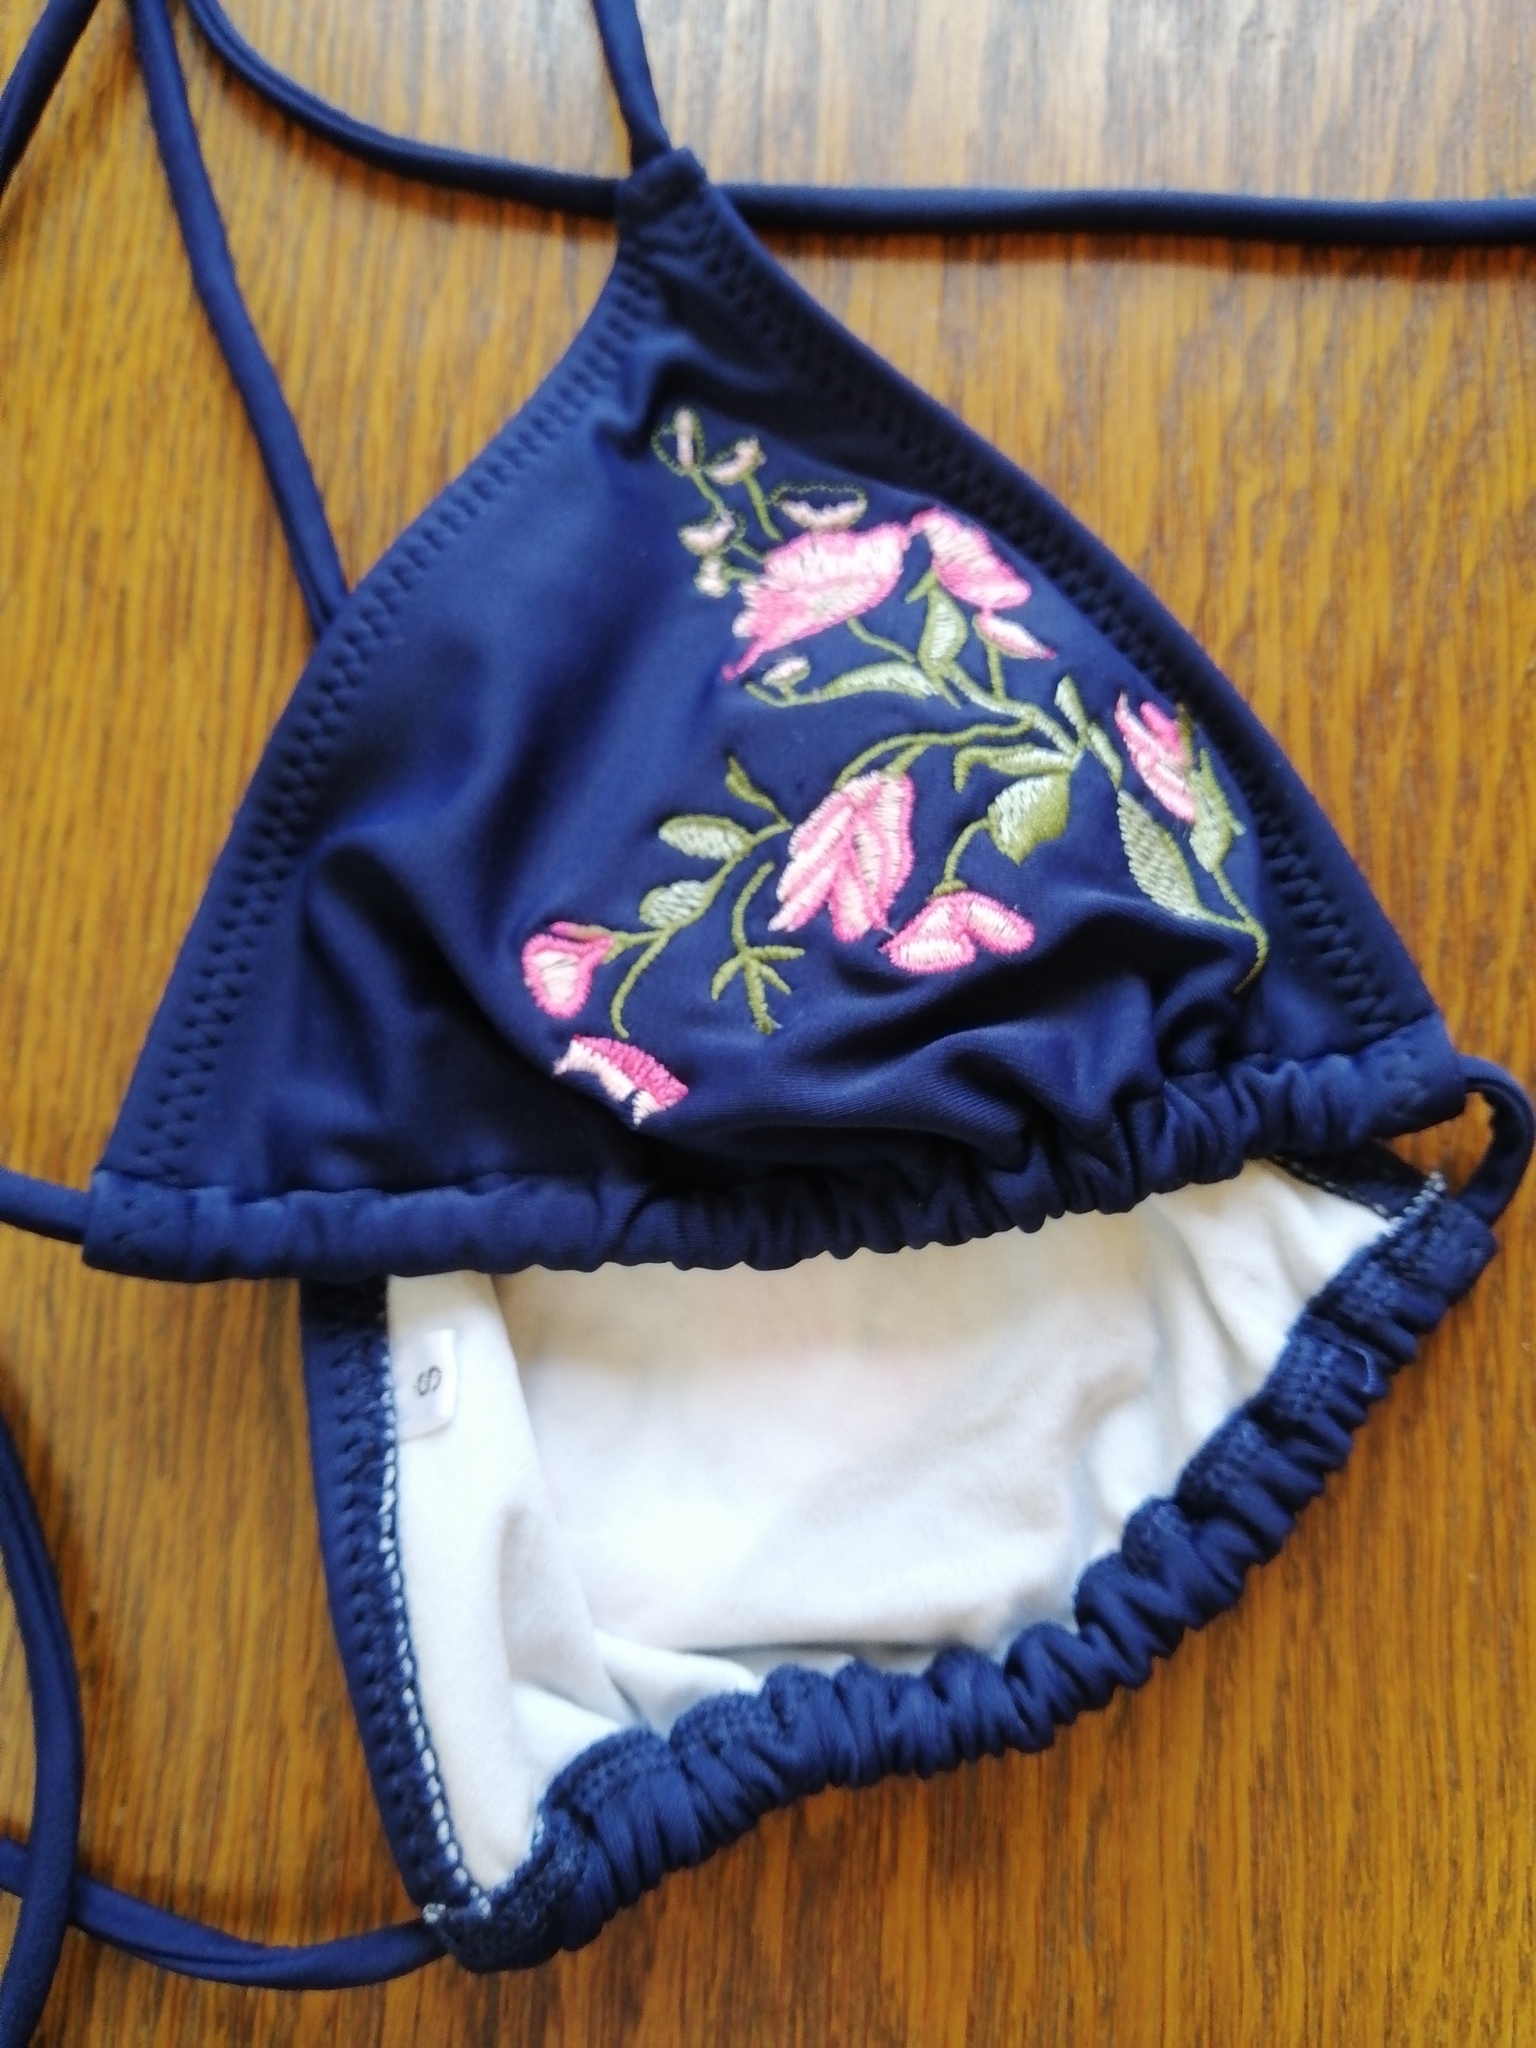 Vintage 60-tal Grace triangle-bikini blå med rosa blomdekor pytteliten